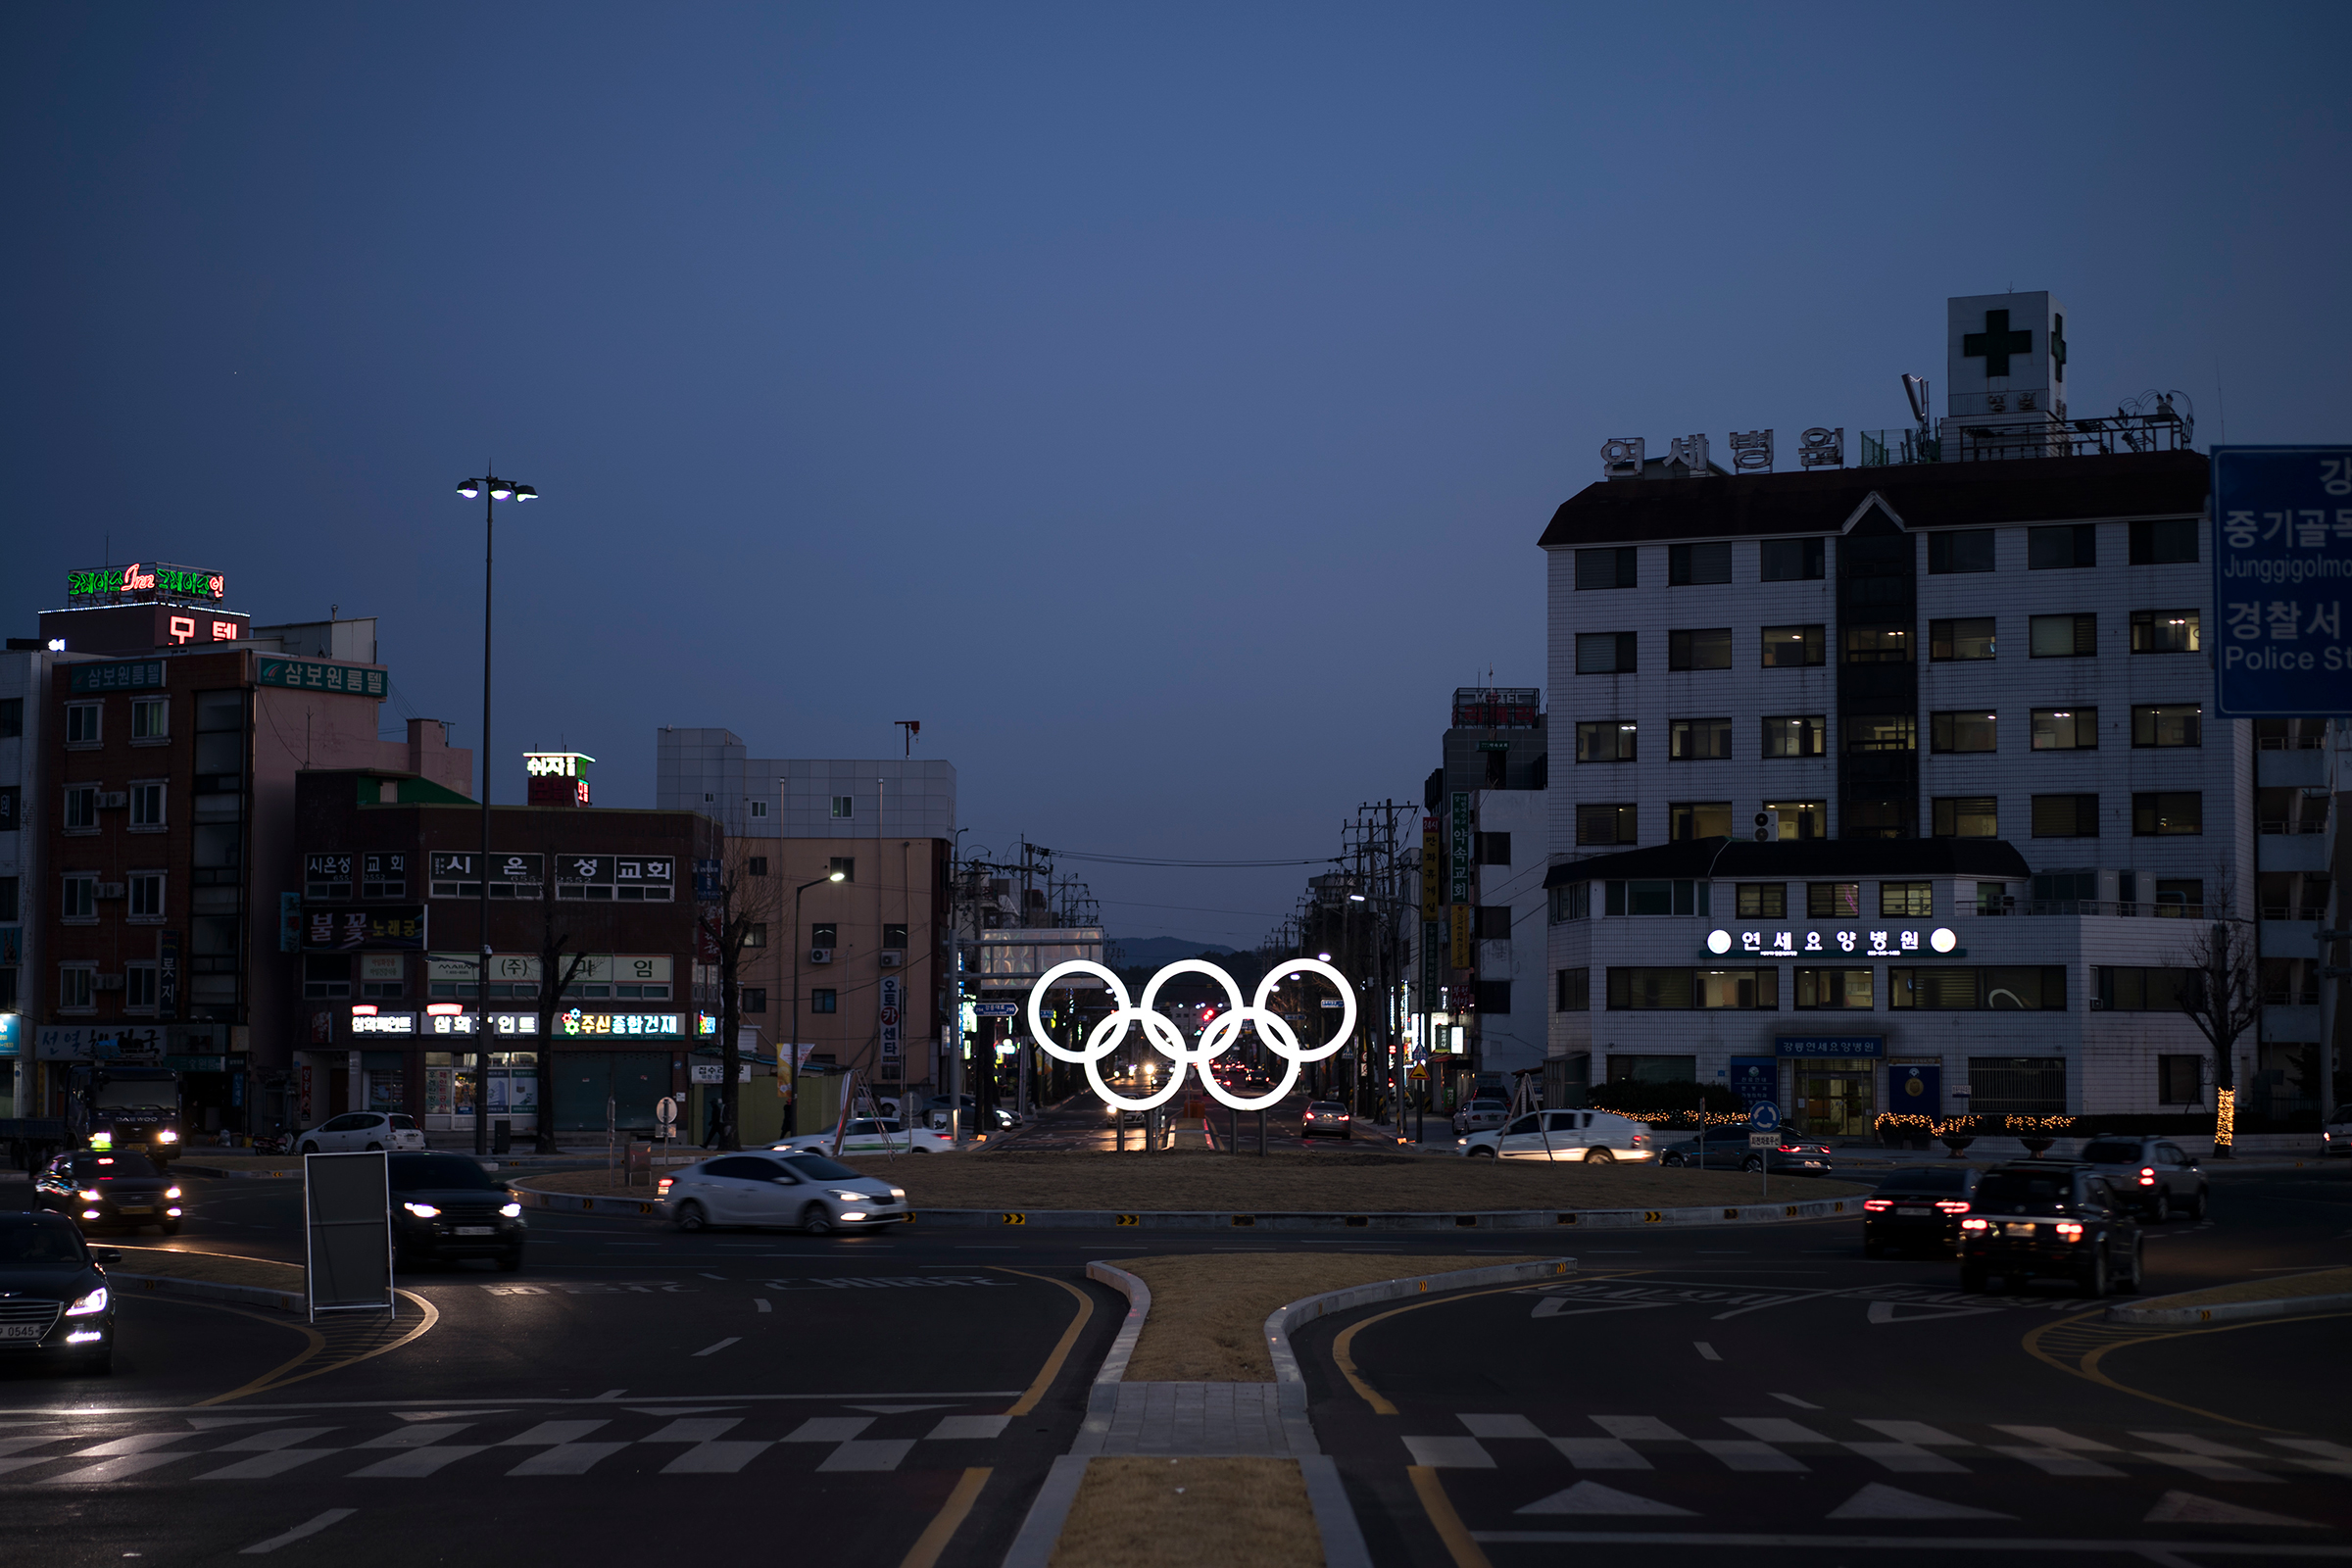 Зимние Олимпийские игры пройдут с 9 по 25 февраля.​​ Церемония открытия состоится 9 февраля на Олимпийском стадионе в Пхёнчхане, начало в 14:00 (мск). Планируется, что после соревнований все построенные спортивные объекты будут использоваться для развития туристической отрасли в Южной Корее.